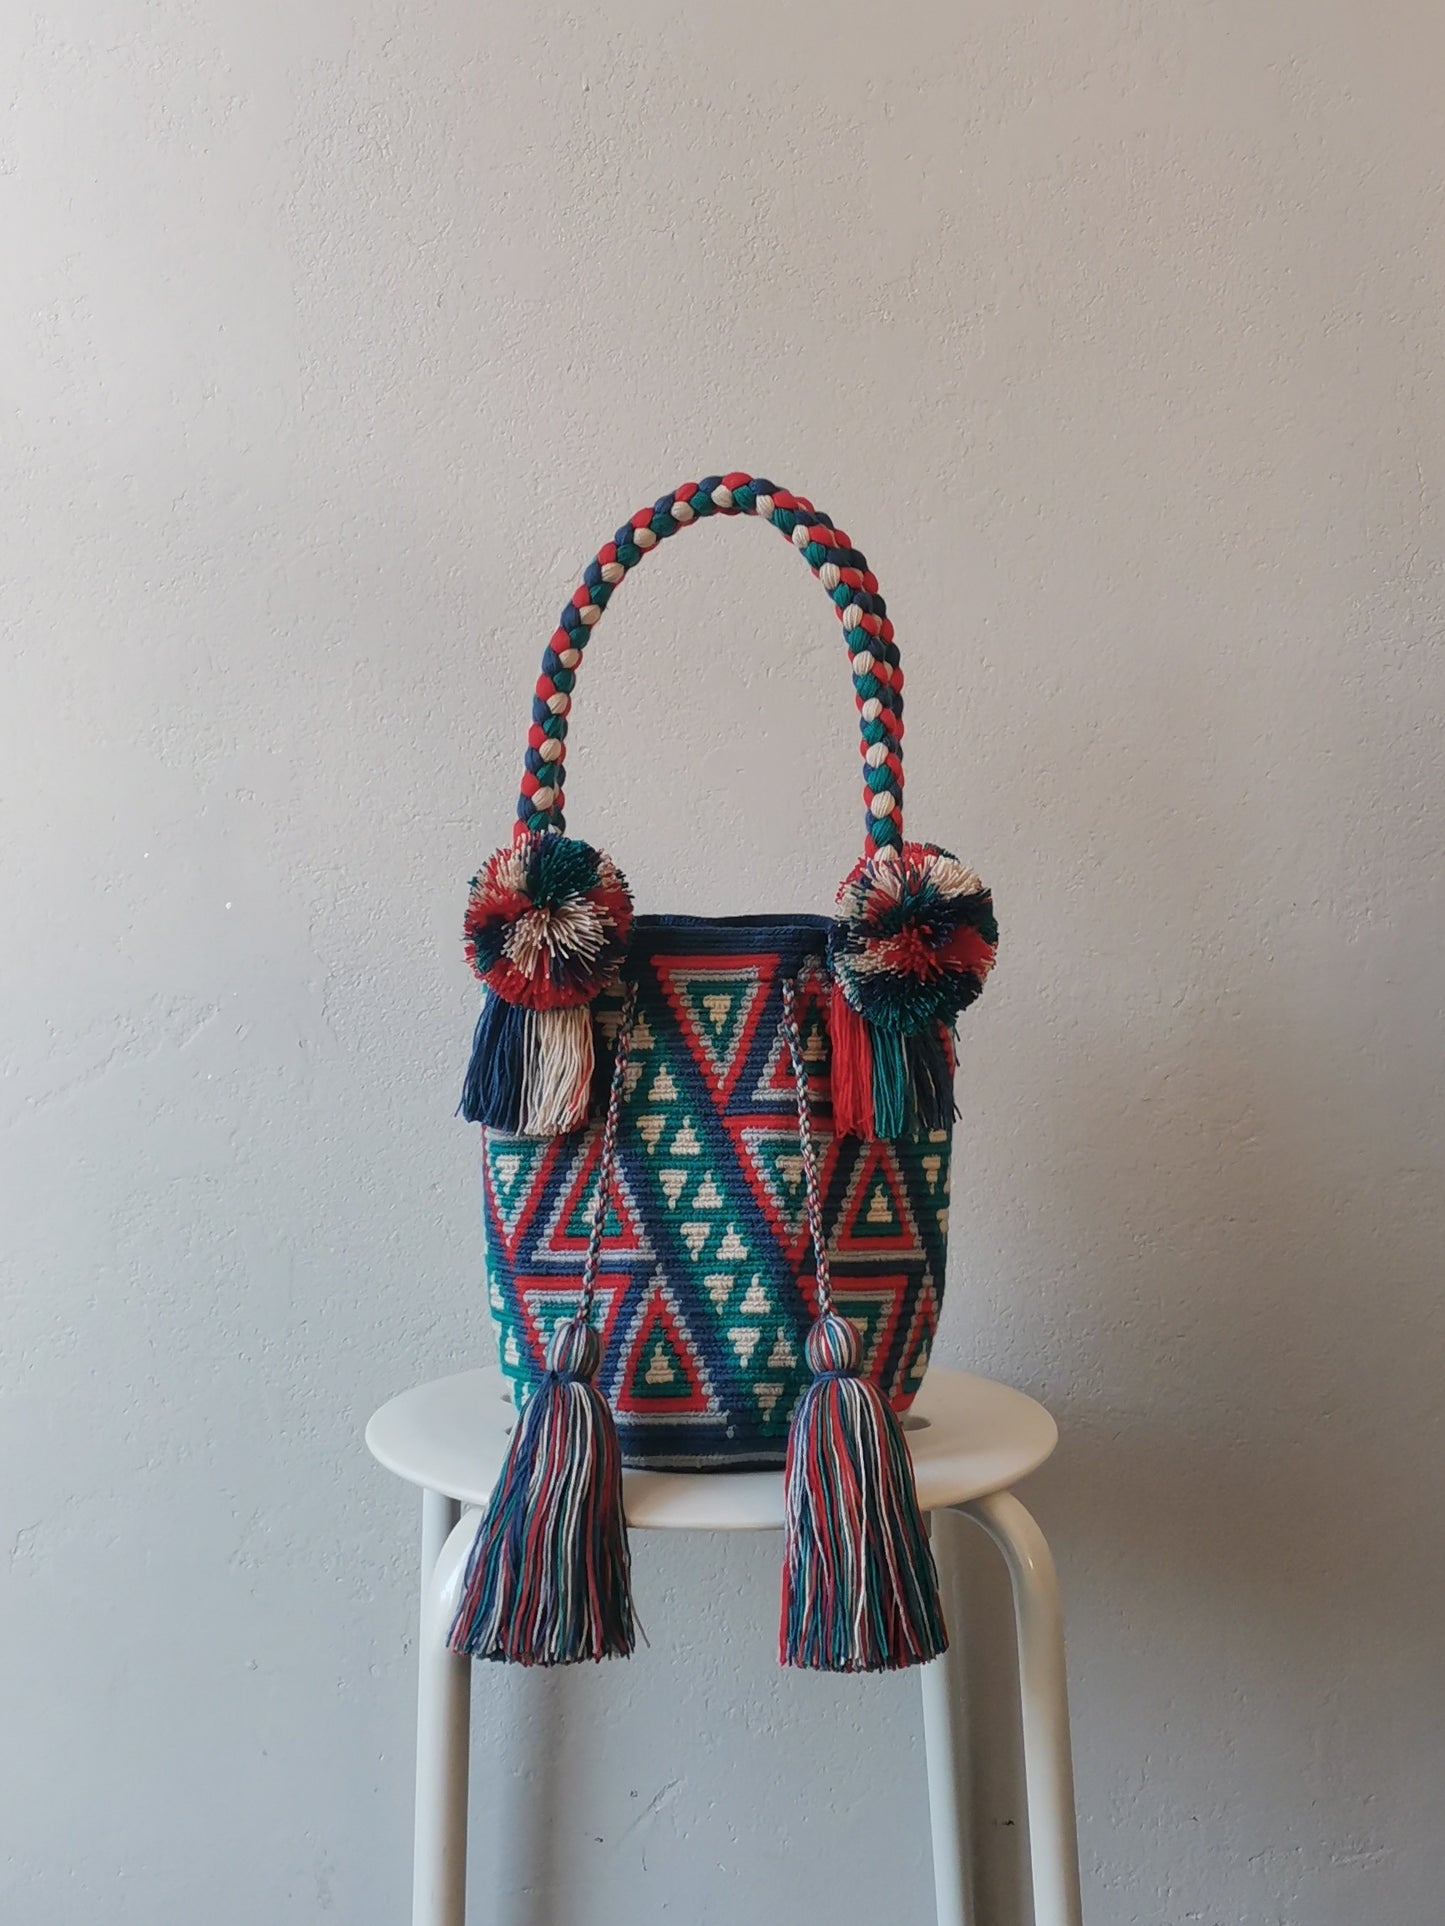 M blue and red mochila handbag